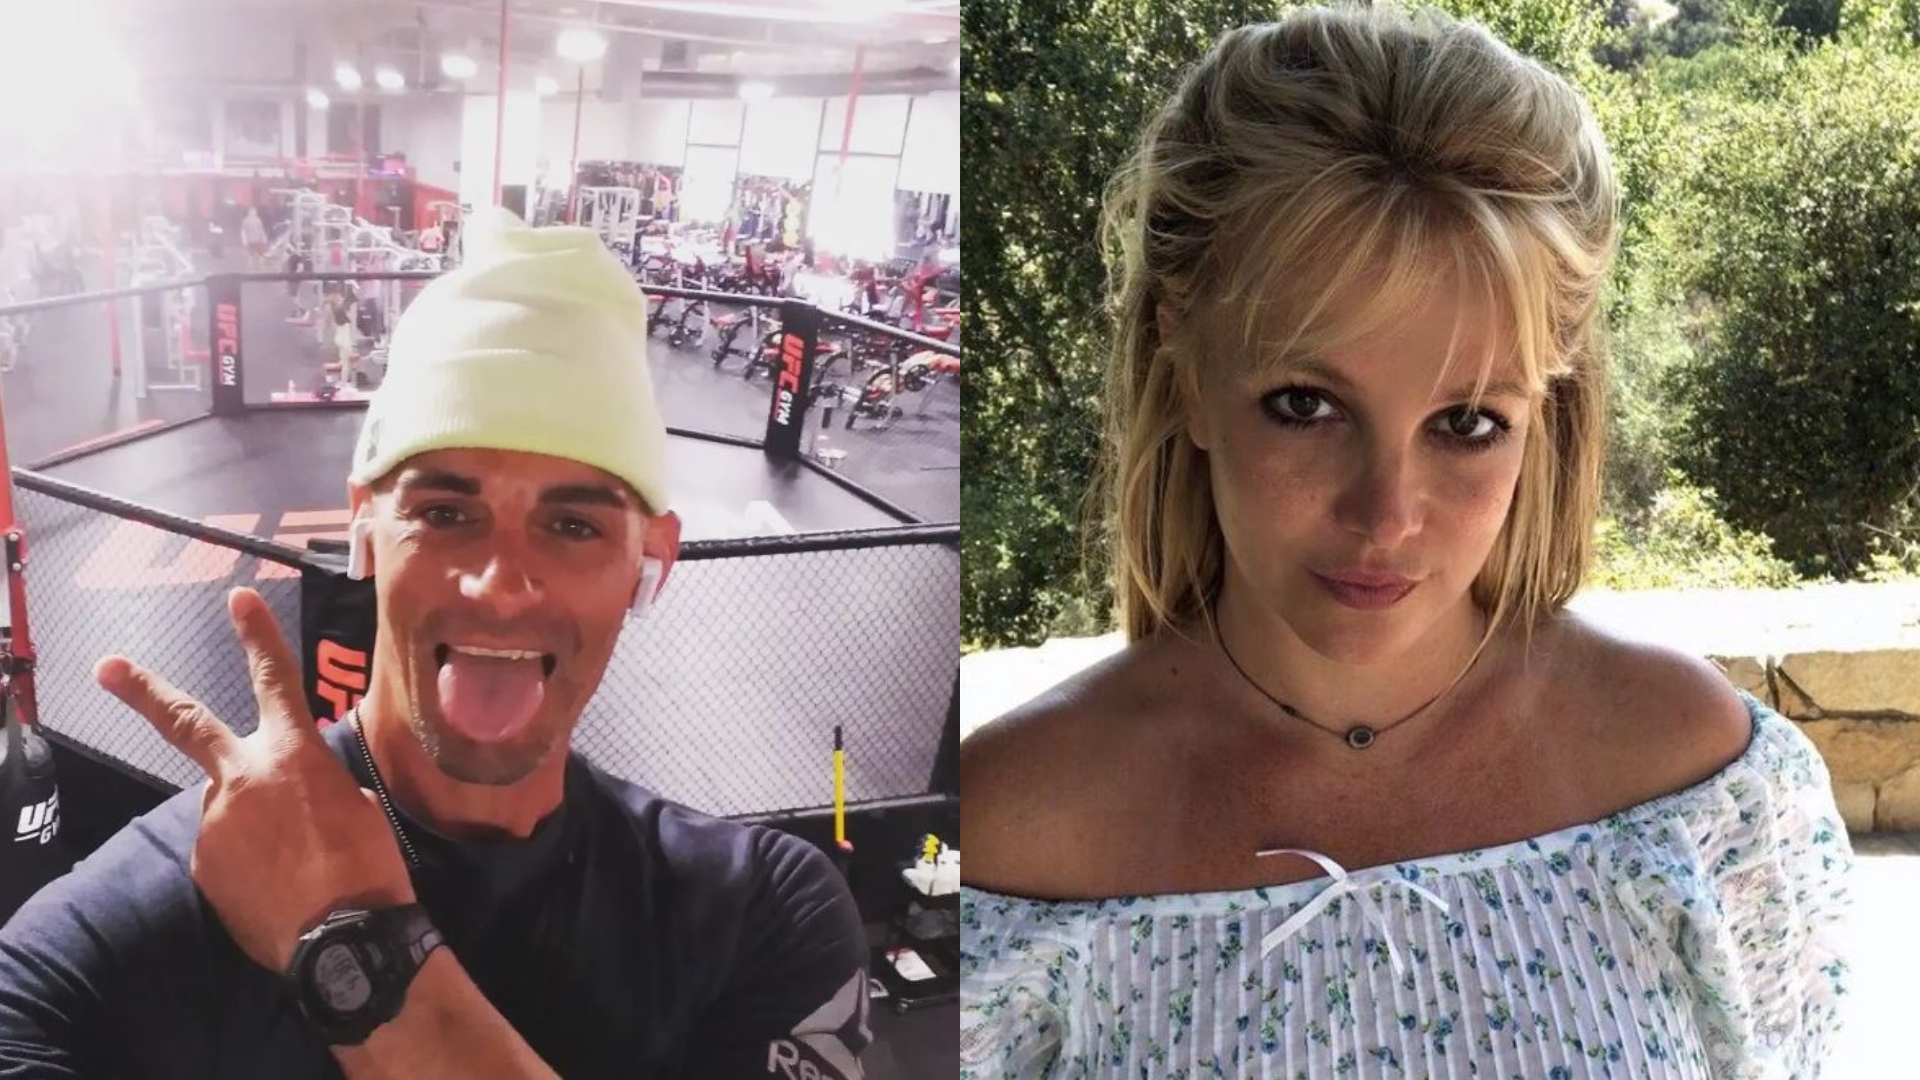 Britney Spears and Jason Alexander were married for just 55 hours in 2004. (Photos: Instagram/@britneyspears/@jason.allen.alexander)